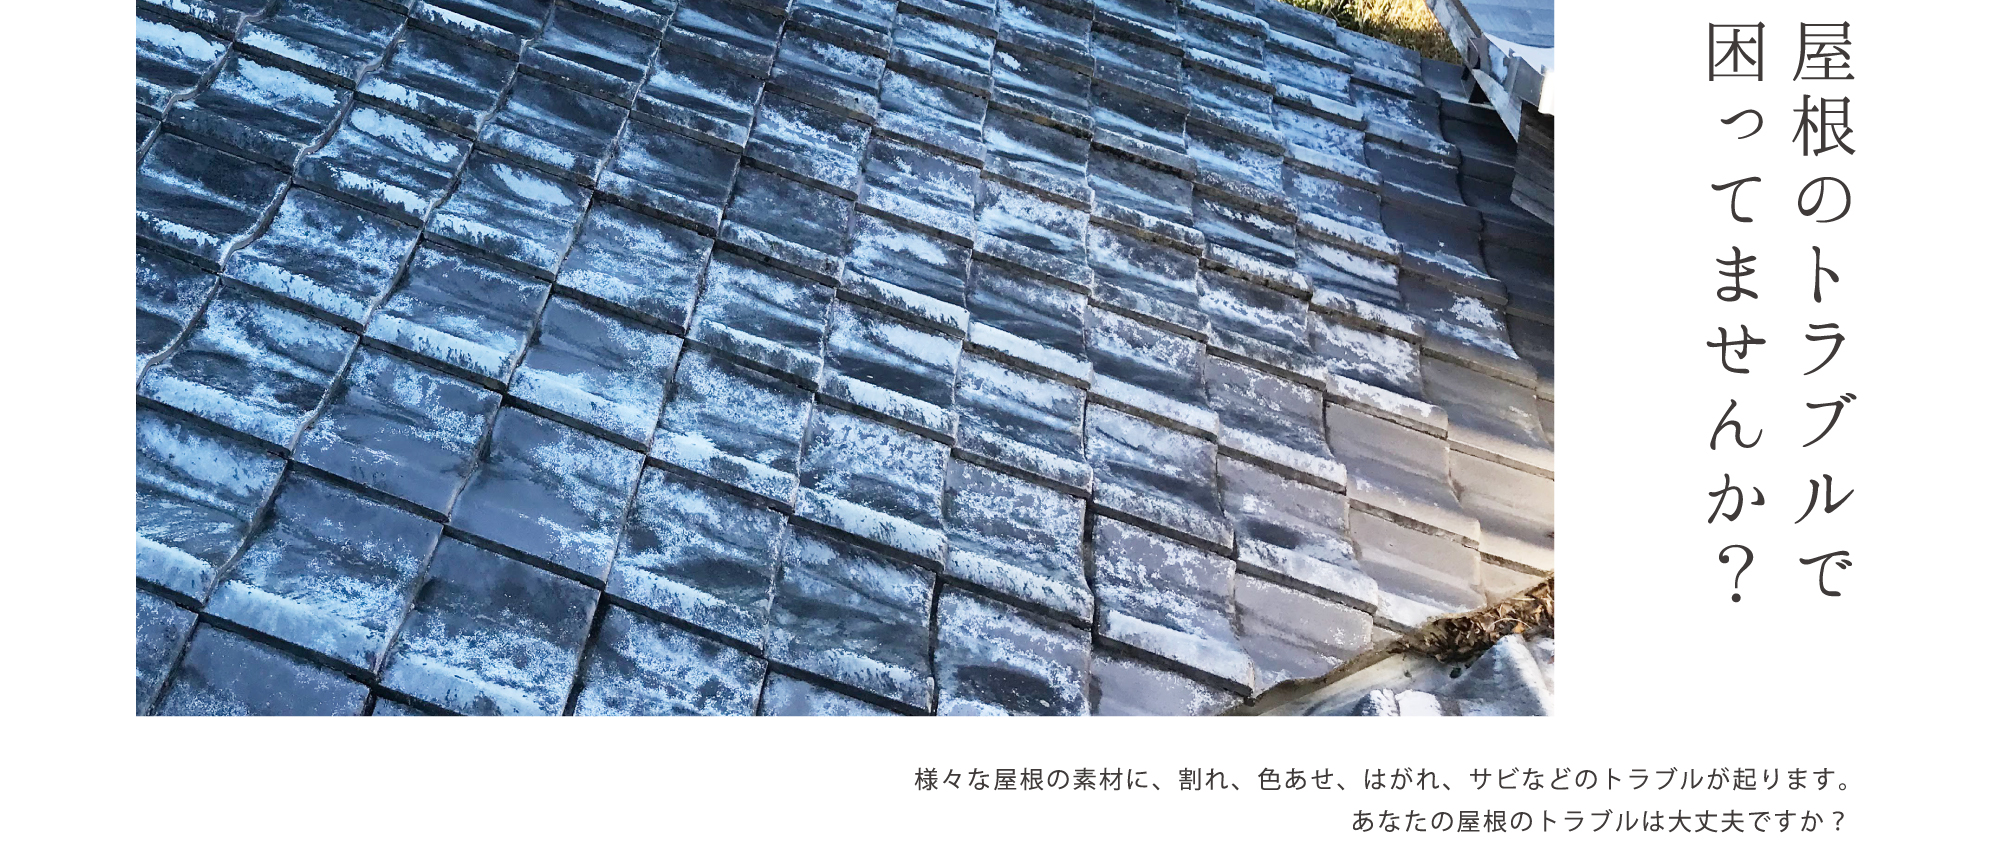 屋根のトラブルで困ってませんか？様々な屋根の素材に、割れ、色あせ、はがれ、サビなどのトラブルが起ります。あなたの屋根のトラブルは大丈夫ですか？